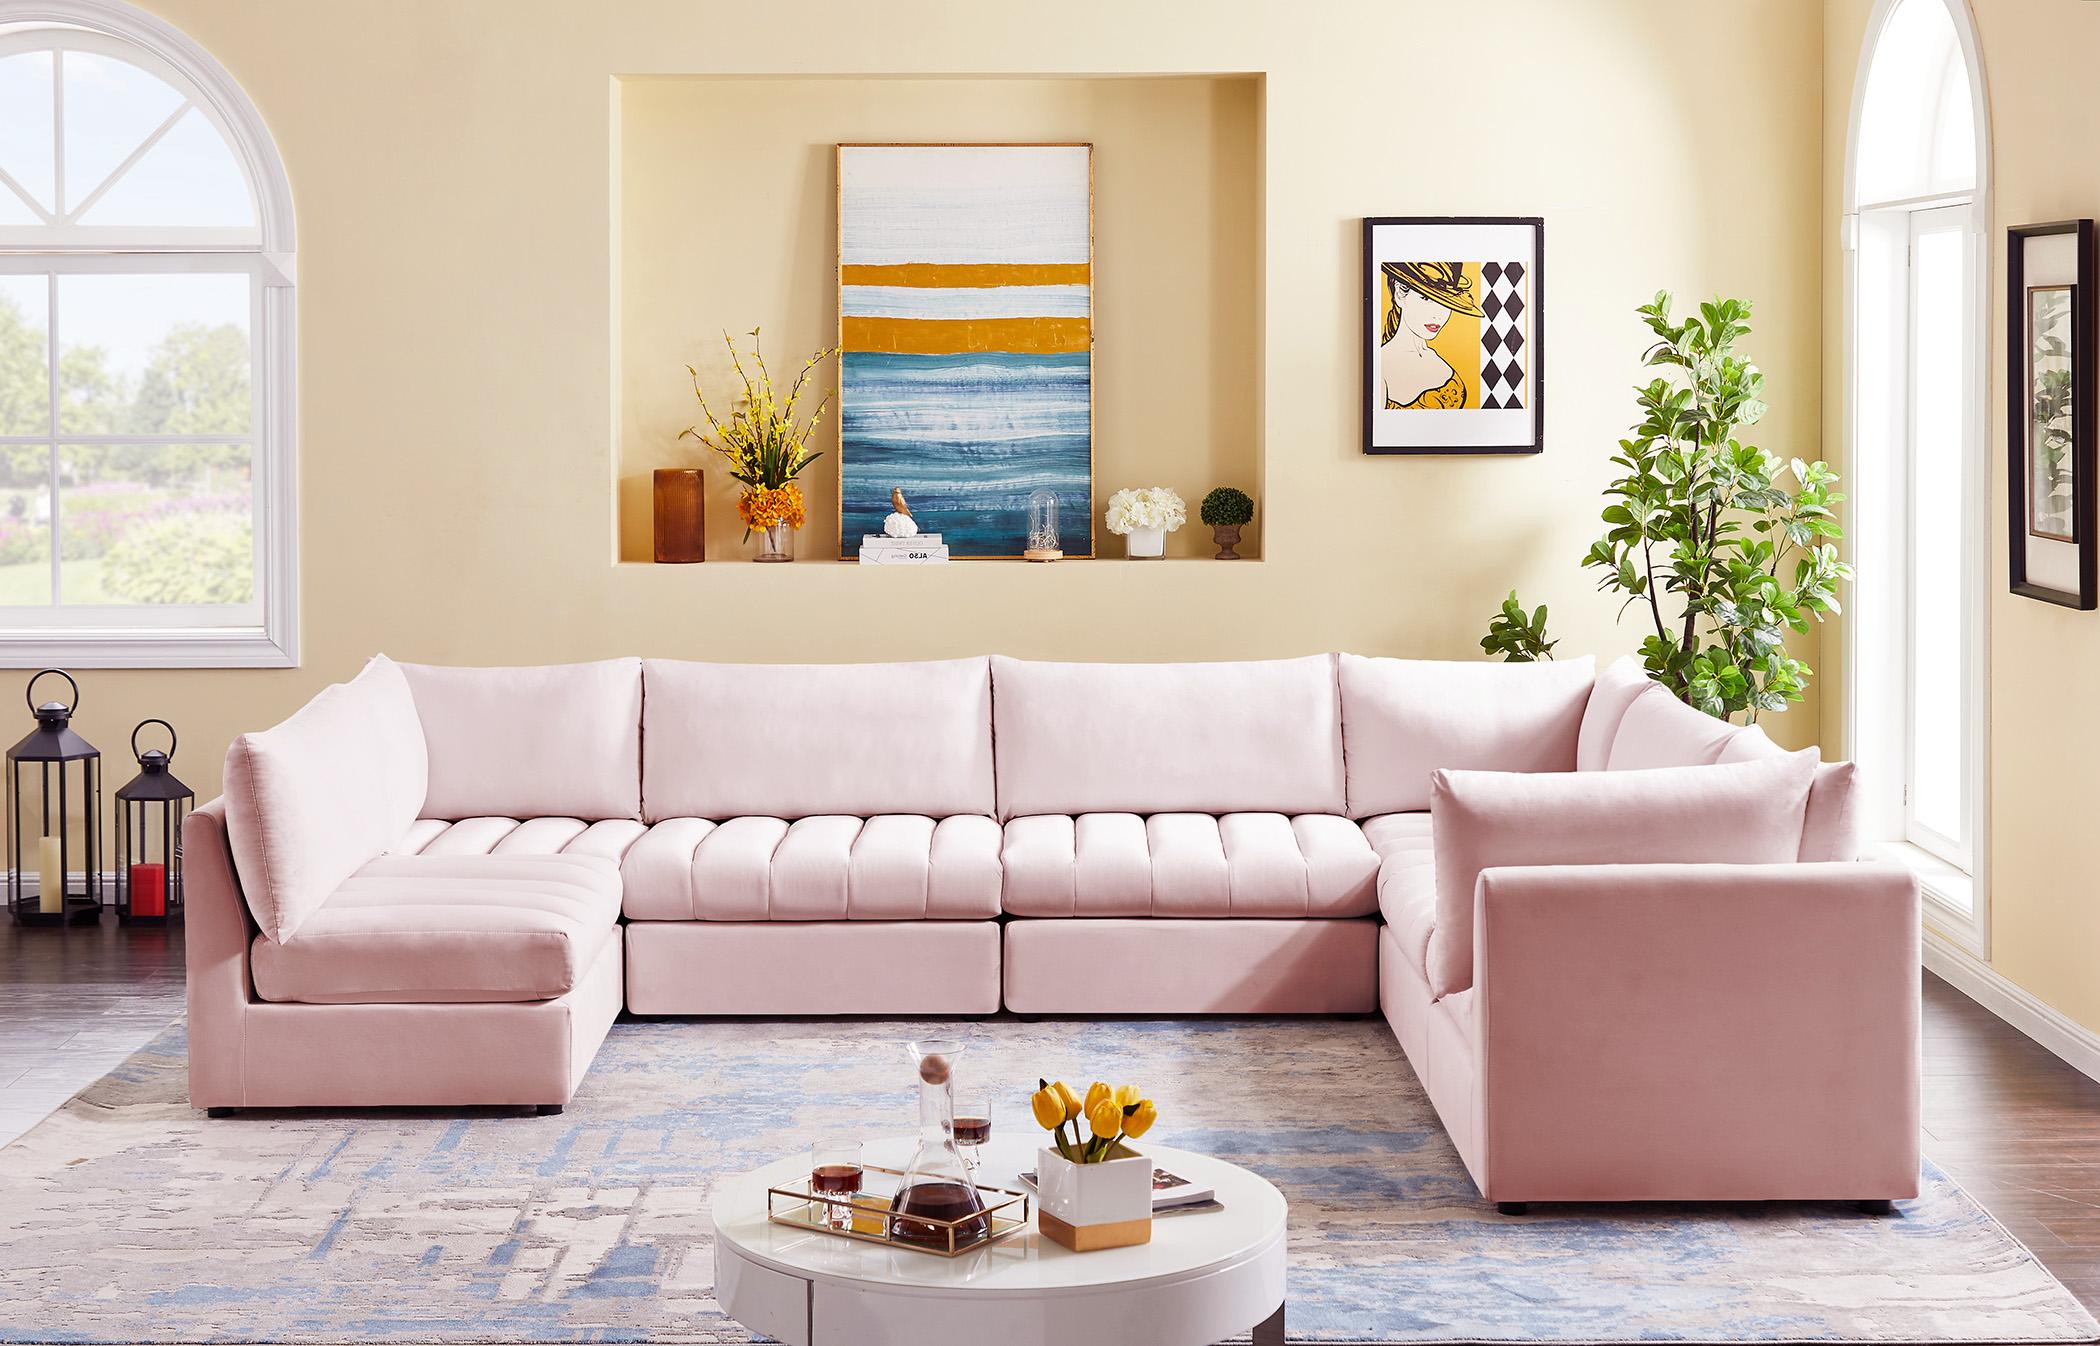 

    
Meridian Furniture JACOB 649Pink-Sec7A Modular Sectional Sofa Pink 649Pink-Sec7A
